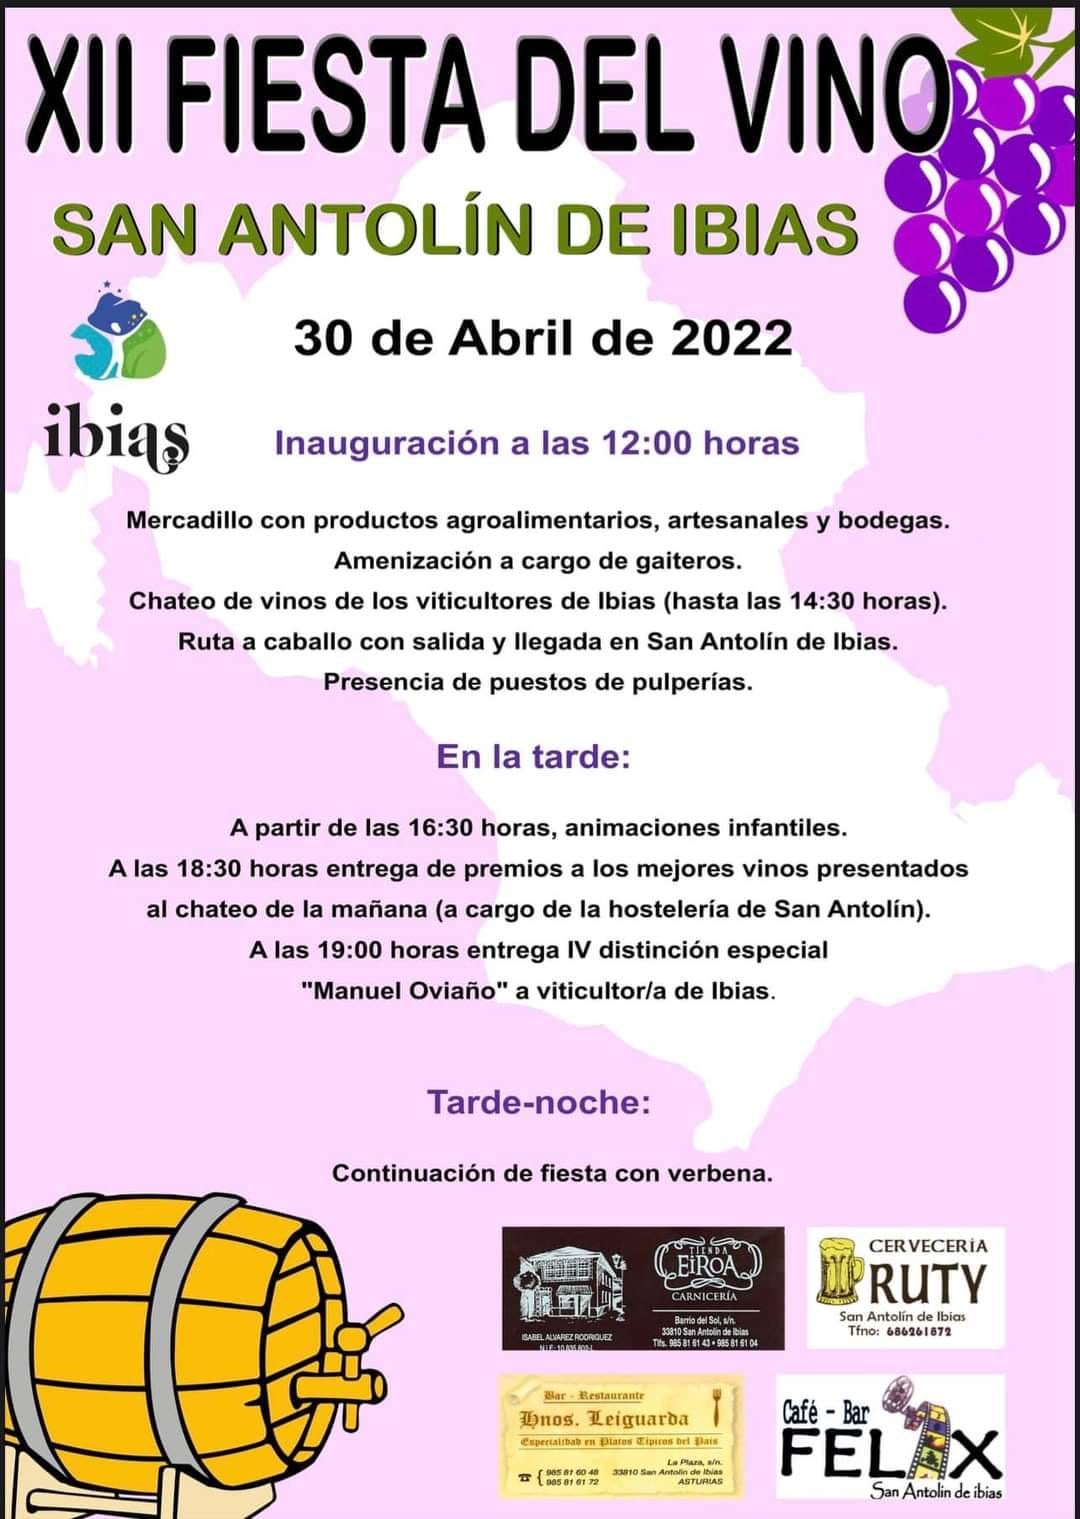 Fiesta del vino de San Antolin de Ibias 2022